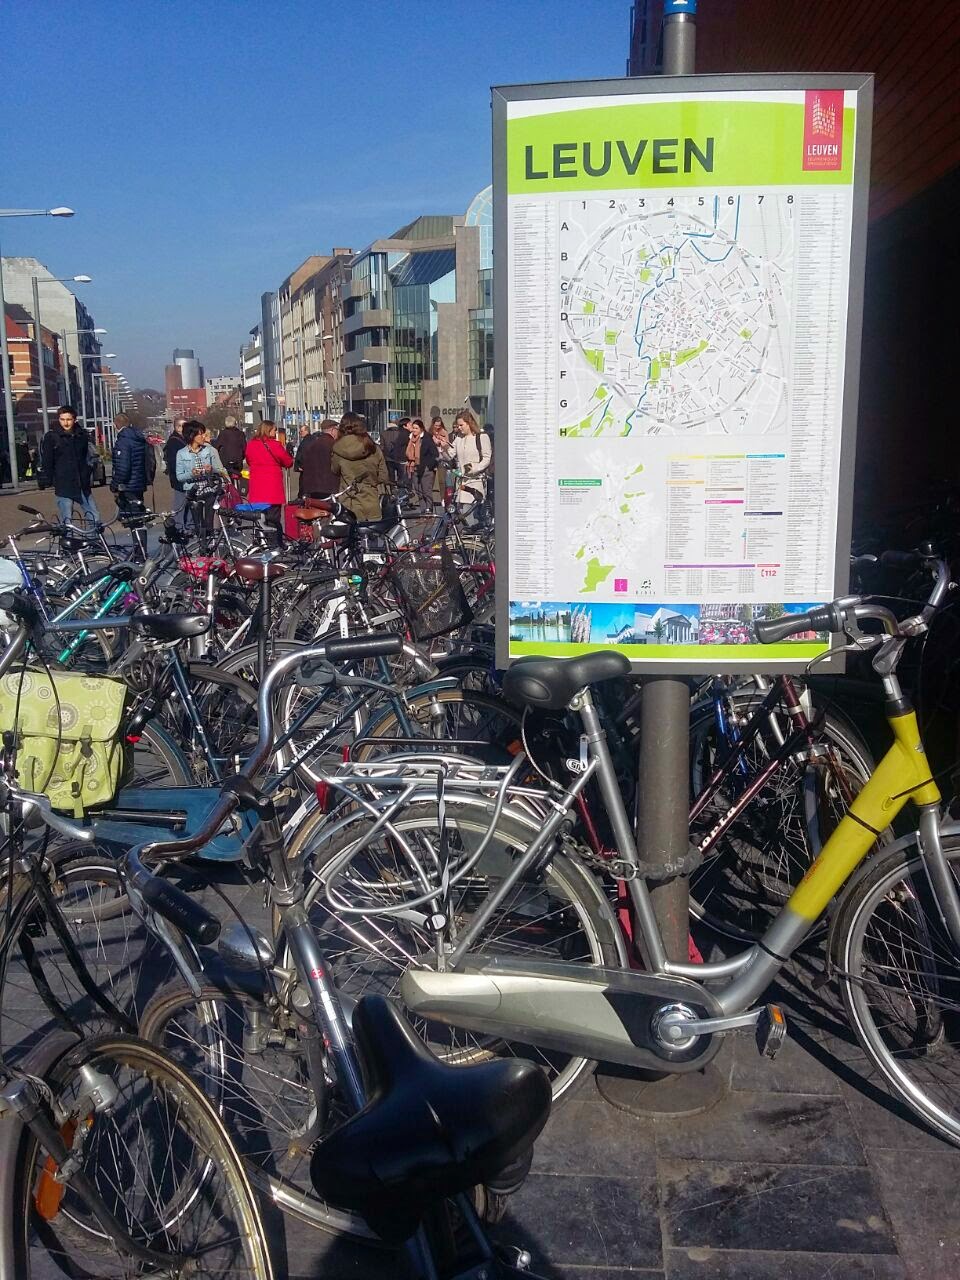 Tempat parkir sepeda disalah satu sudut kota di Belanda dan Leuven Belgia